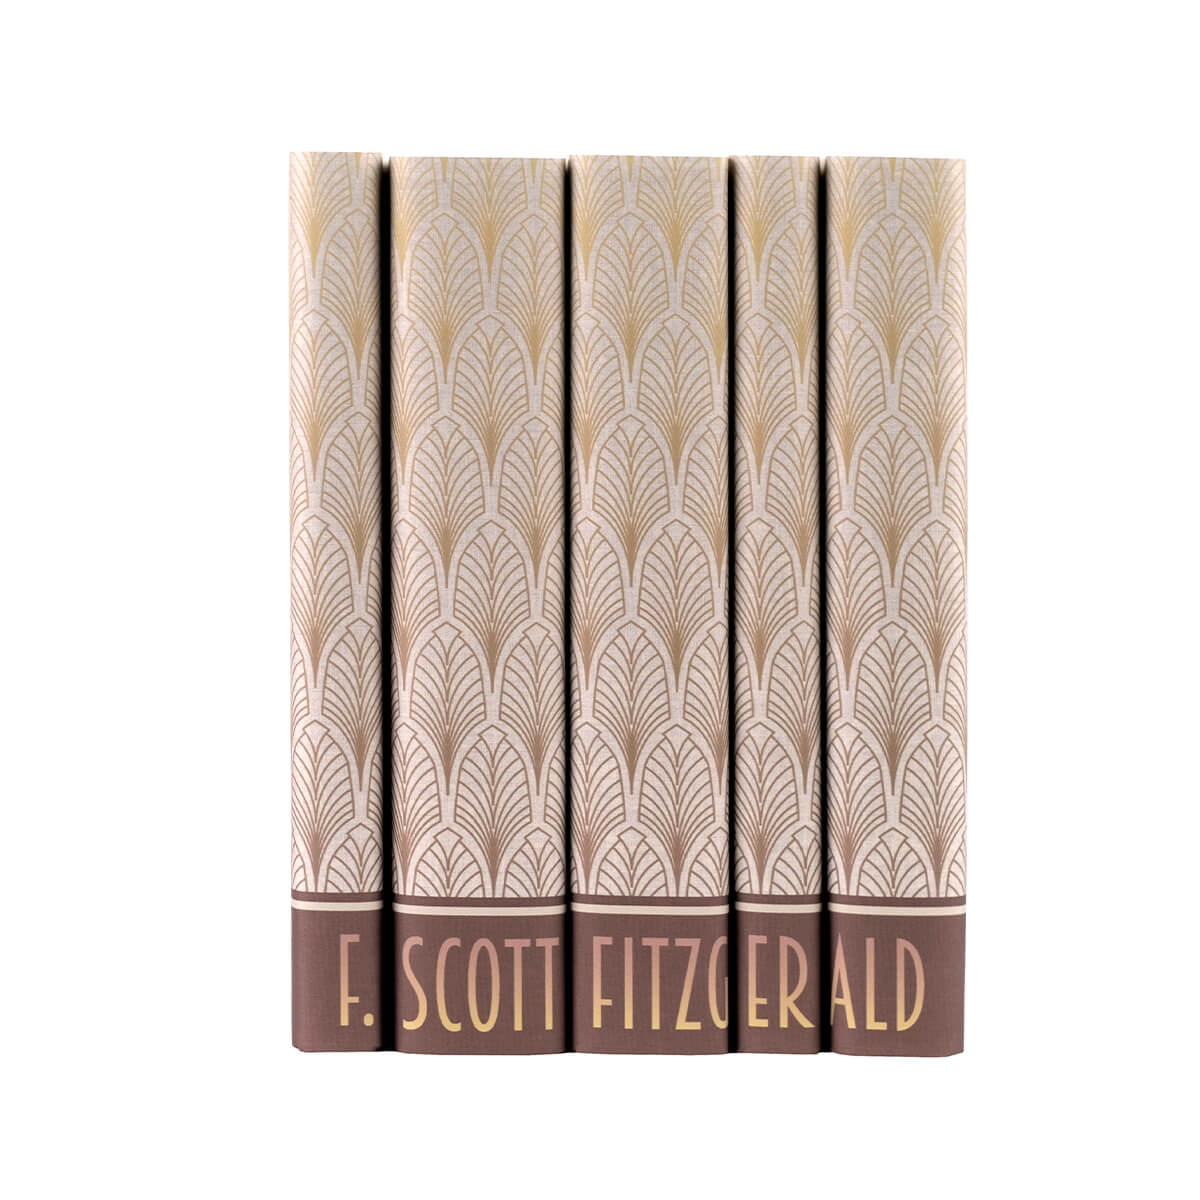 Customized F. Scott Fitzgerald Art Deco Set